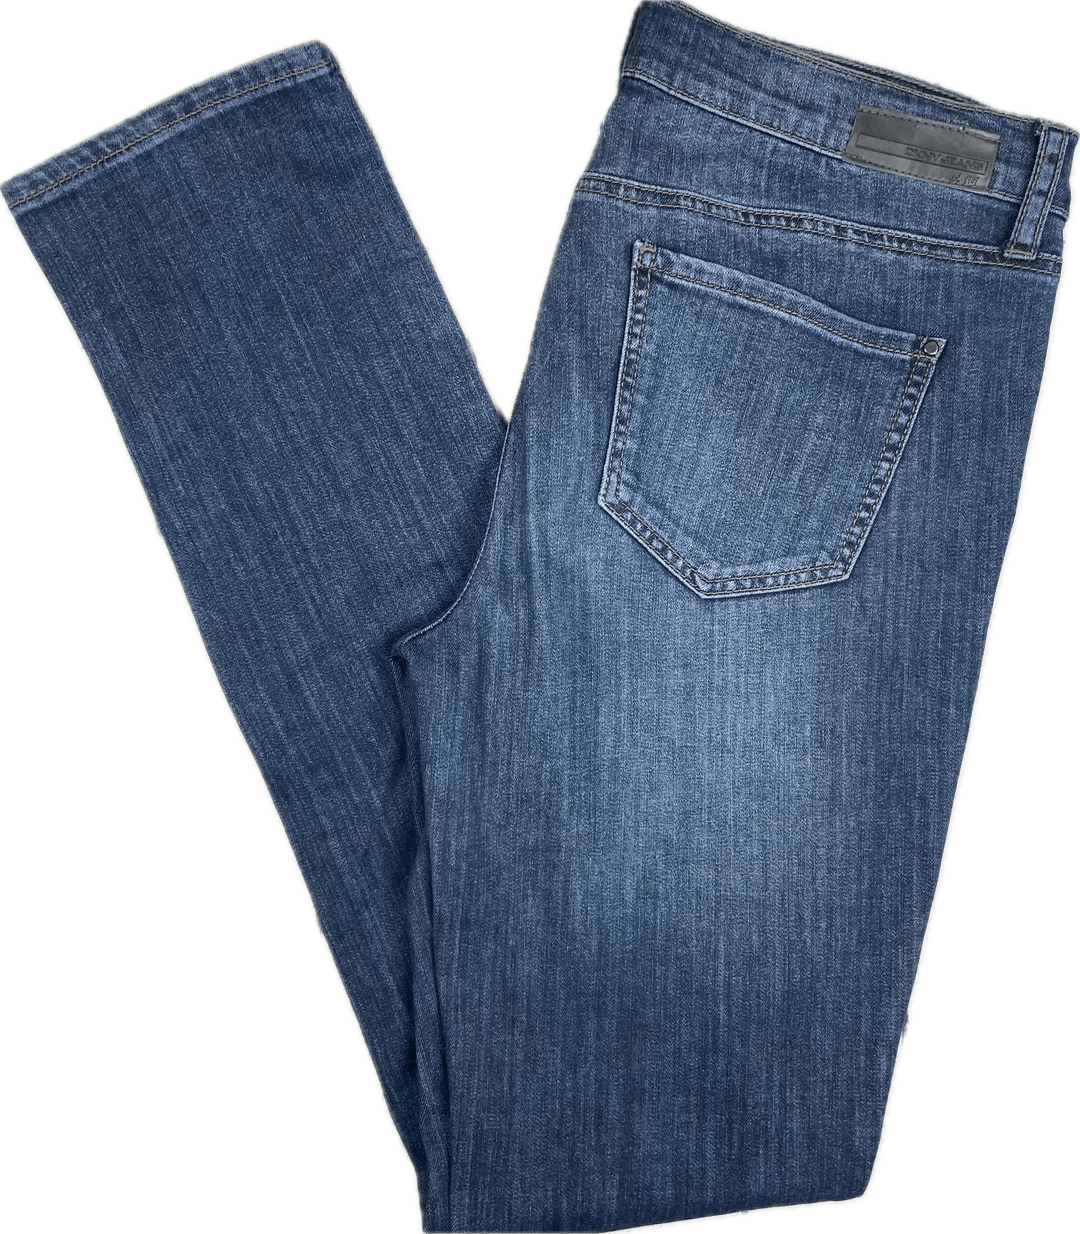 DKNY 'SOHO Skinny' Stretch Relaxed Denim Jeans- Size 8/9 - Jean Pool